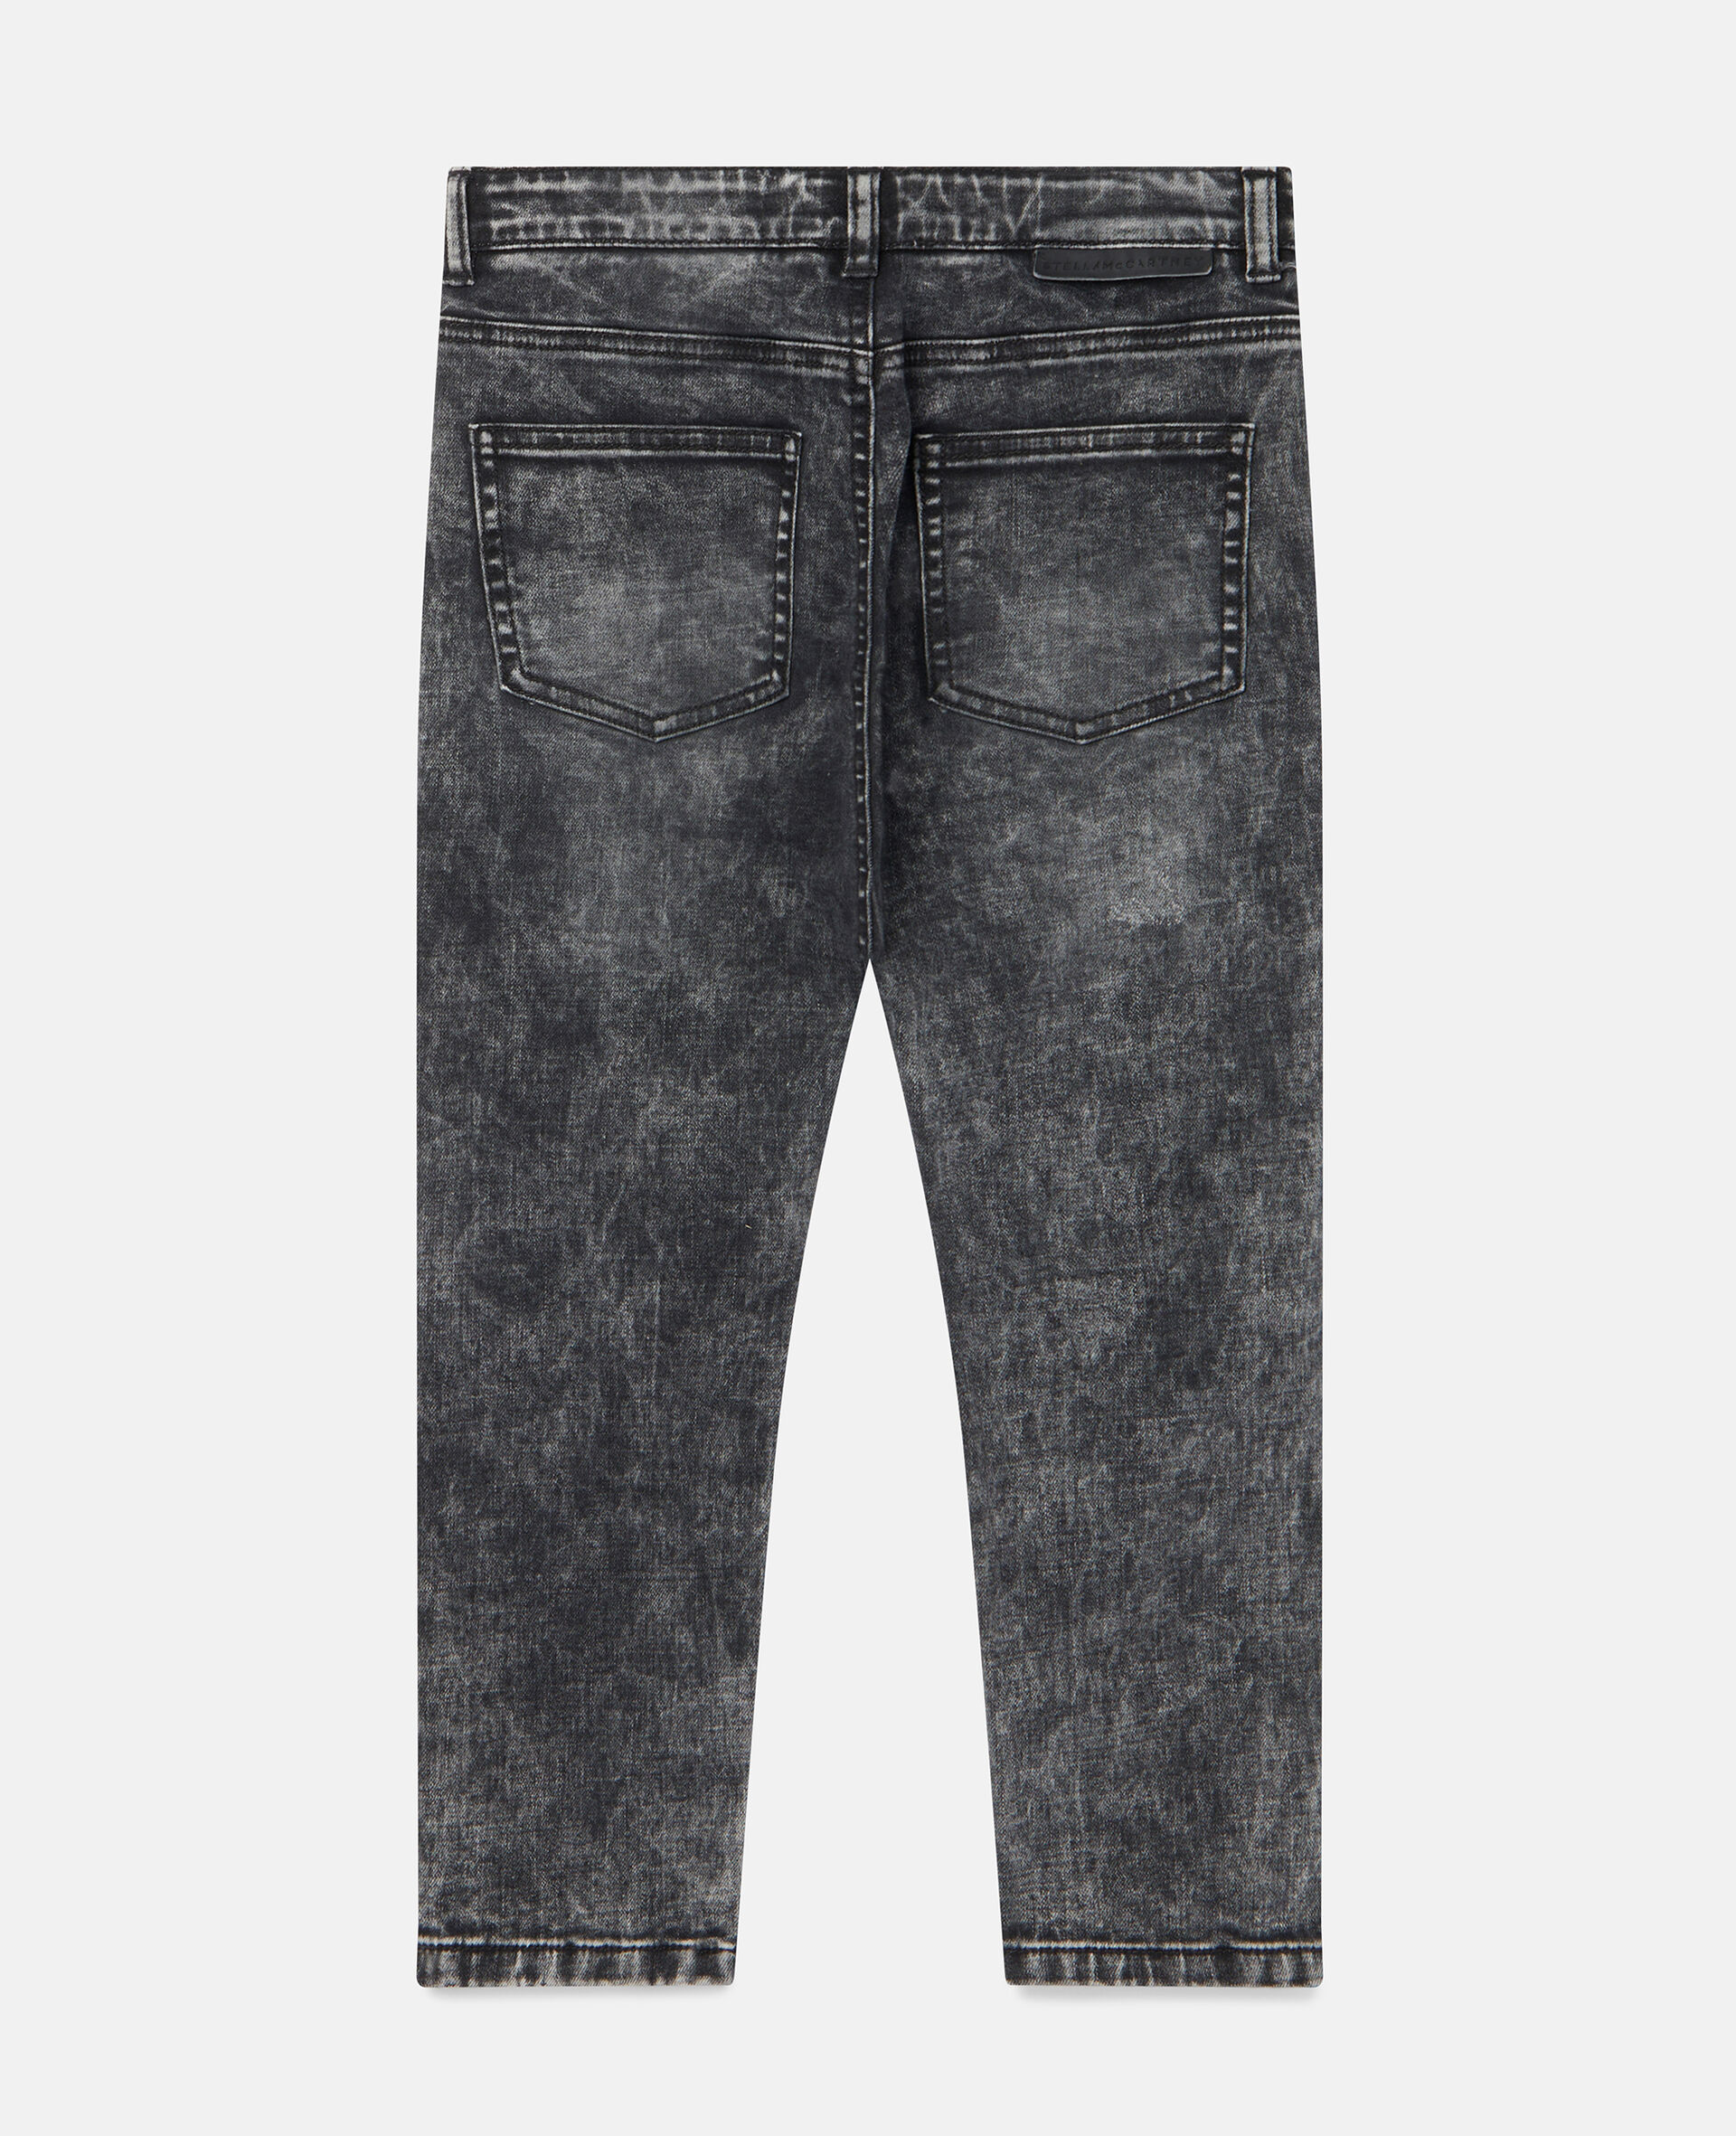 Acid Wash Denim Trousers-Black-large image number 2